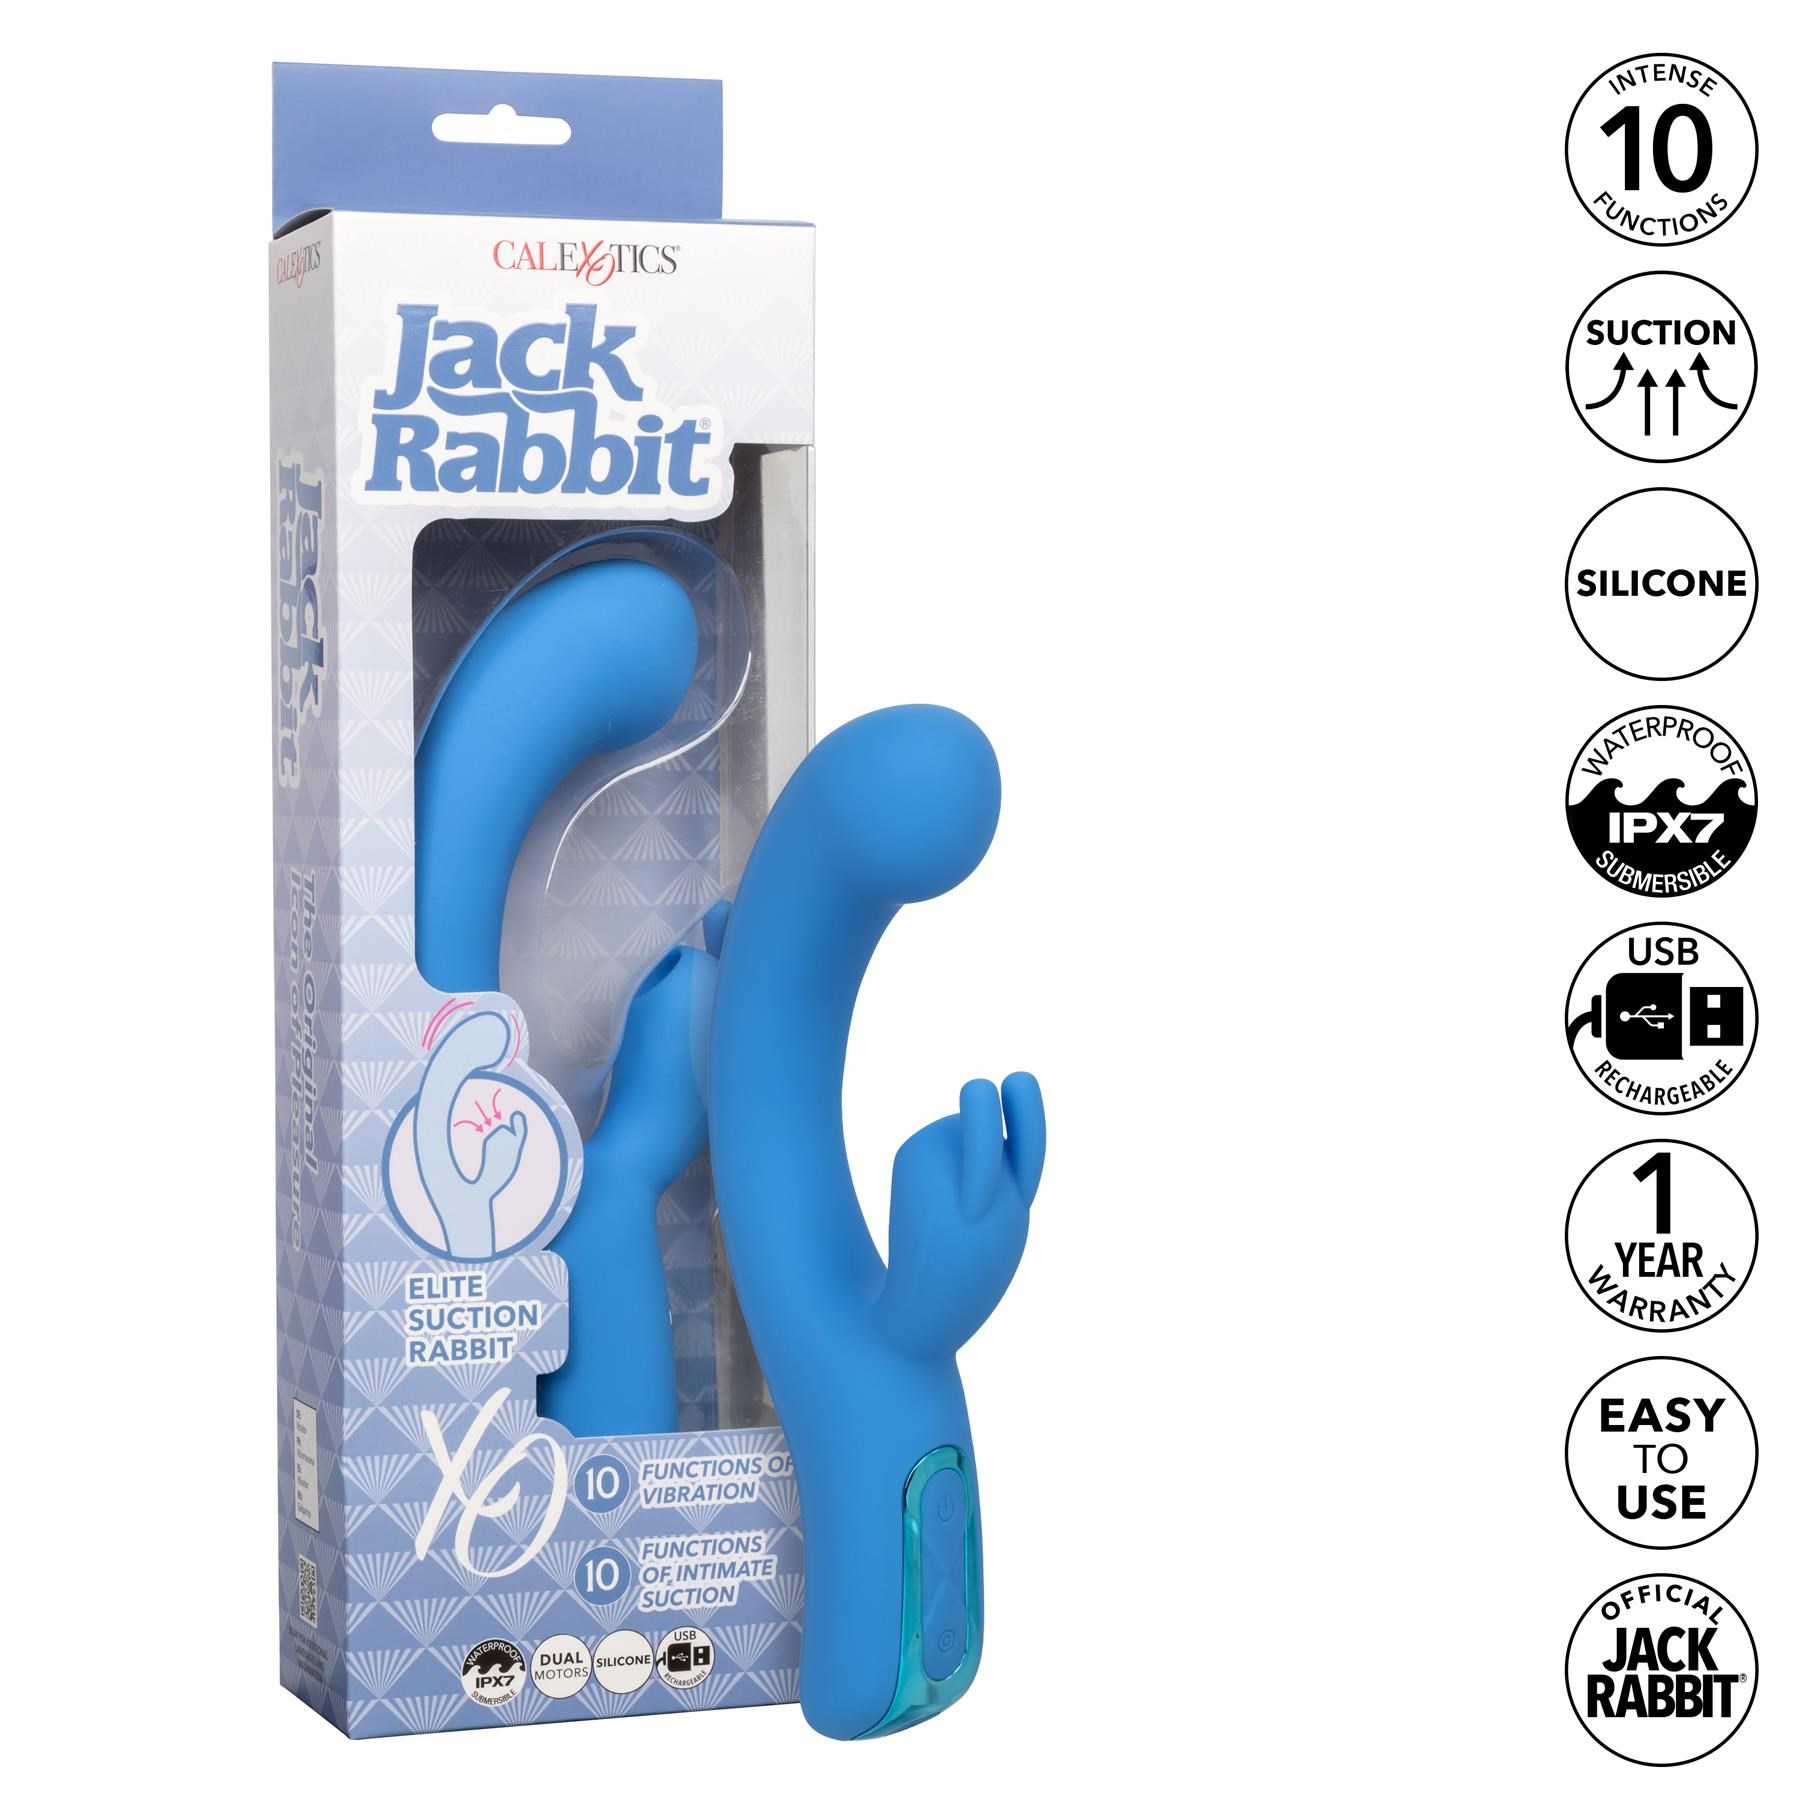 Jack Rabbit Elite Suction Rabbit - Features